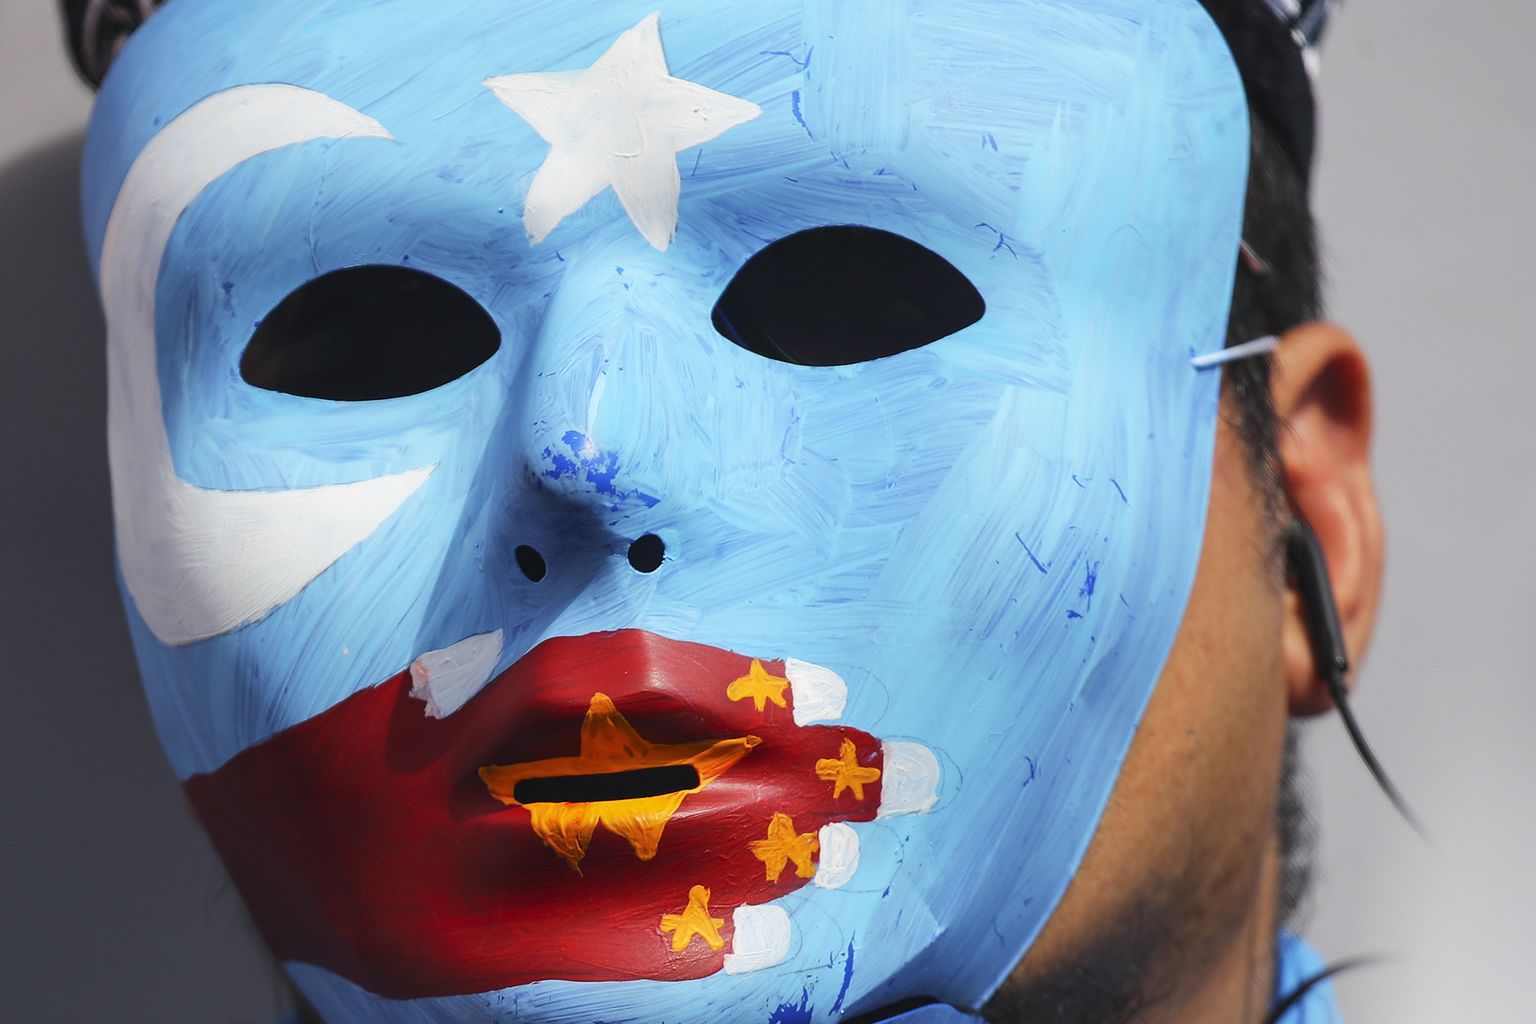 Malaisias Kuala Lumpuris 2019. aasta detsembris toimunud uiguuride halva kohtlemise vastasel protestil kandis inimene maski, millel on Ida-Turkestani (Xinjiangi) lipp koos Hiina lipuga suu ees, olles viide, et Hiina vähemused peavad oma suu kinni hoidma